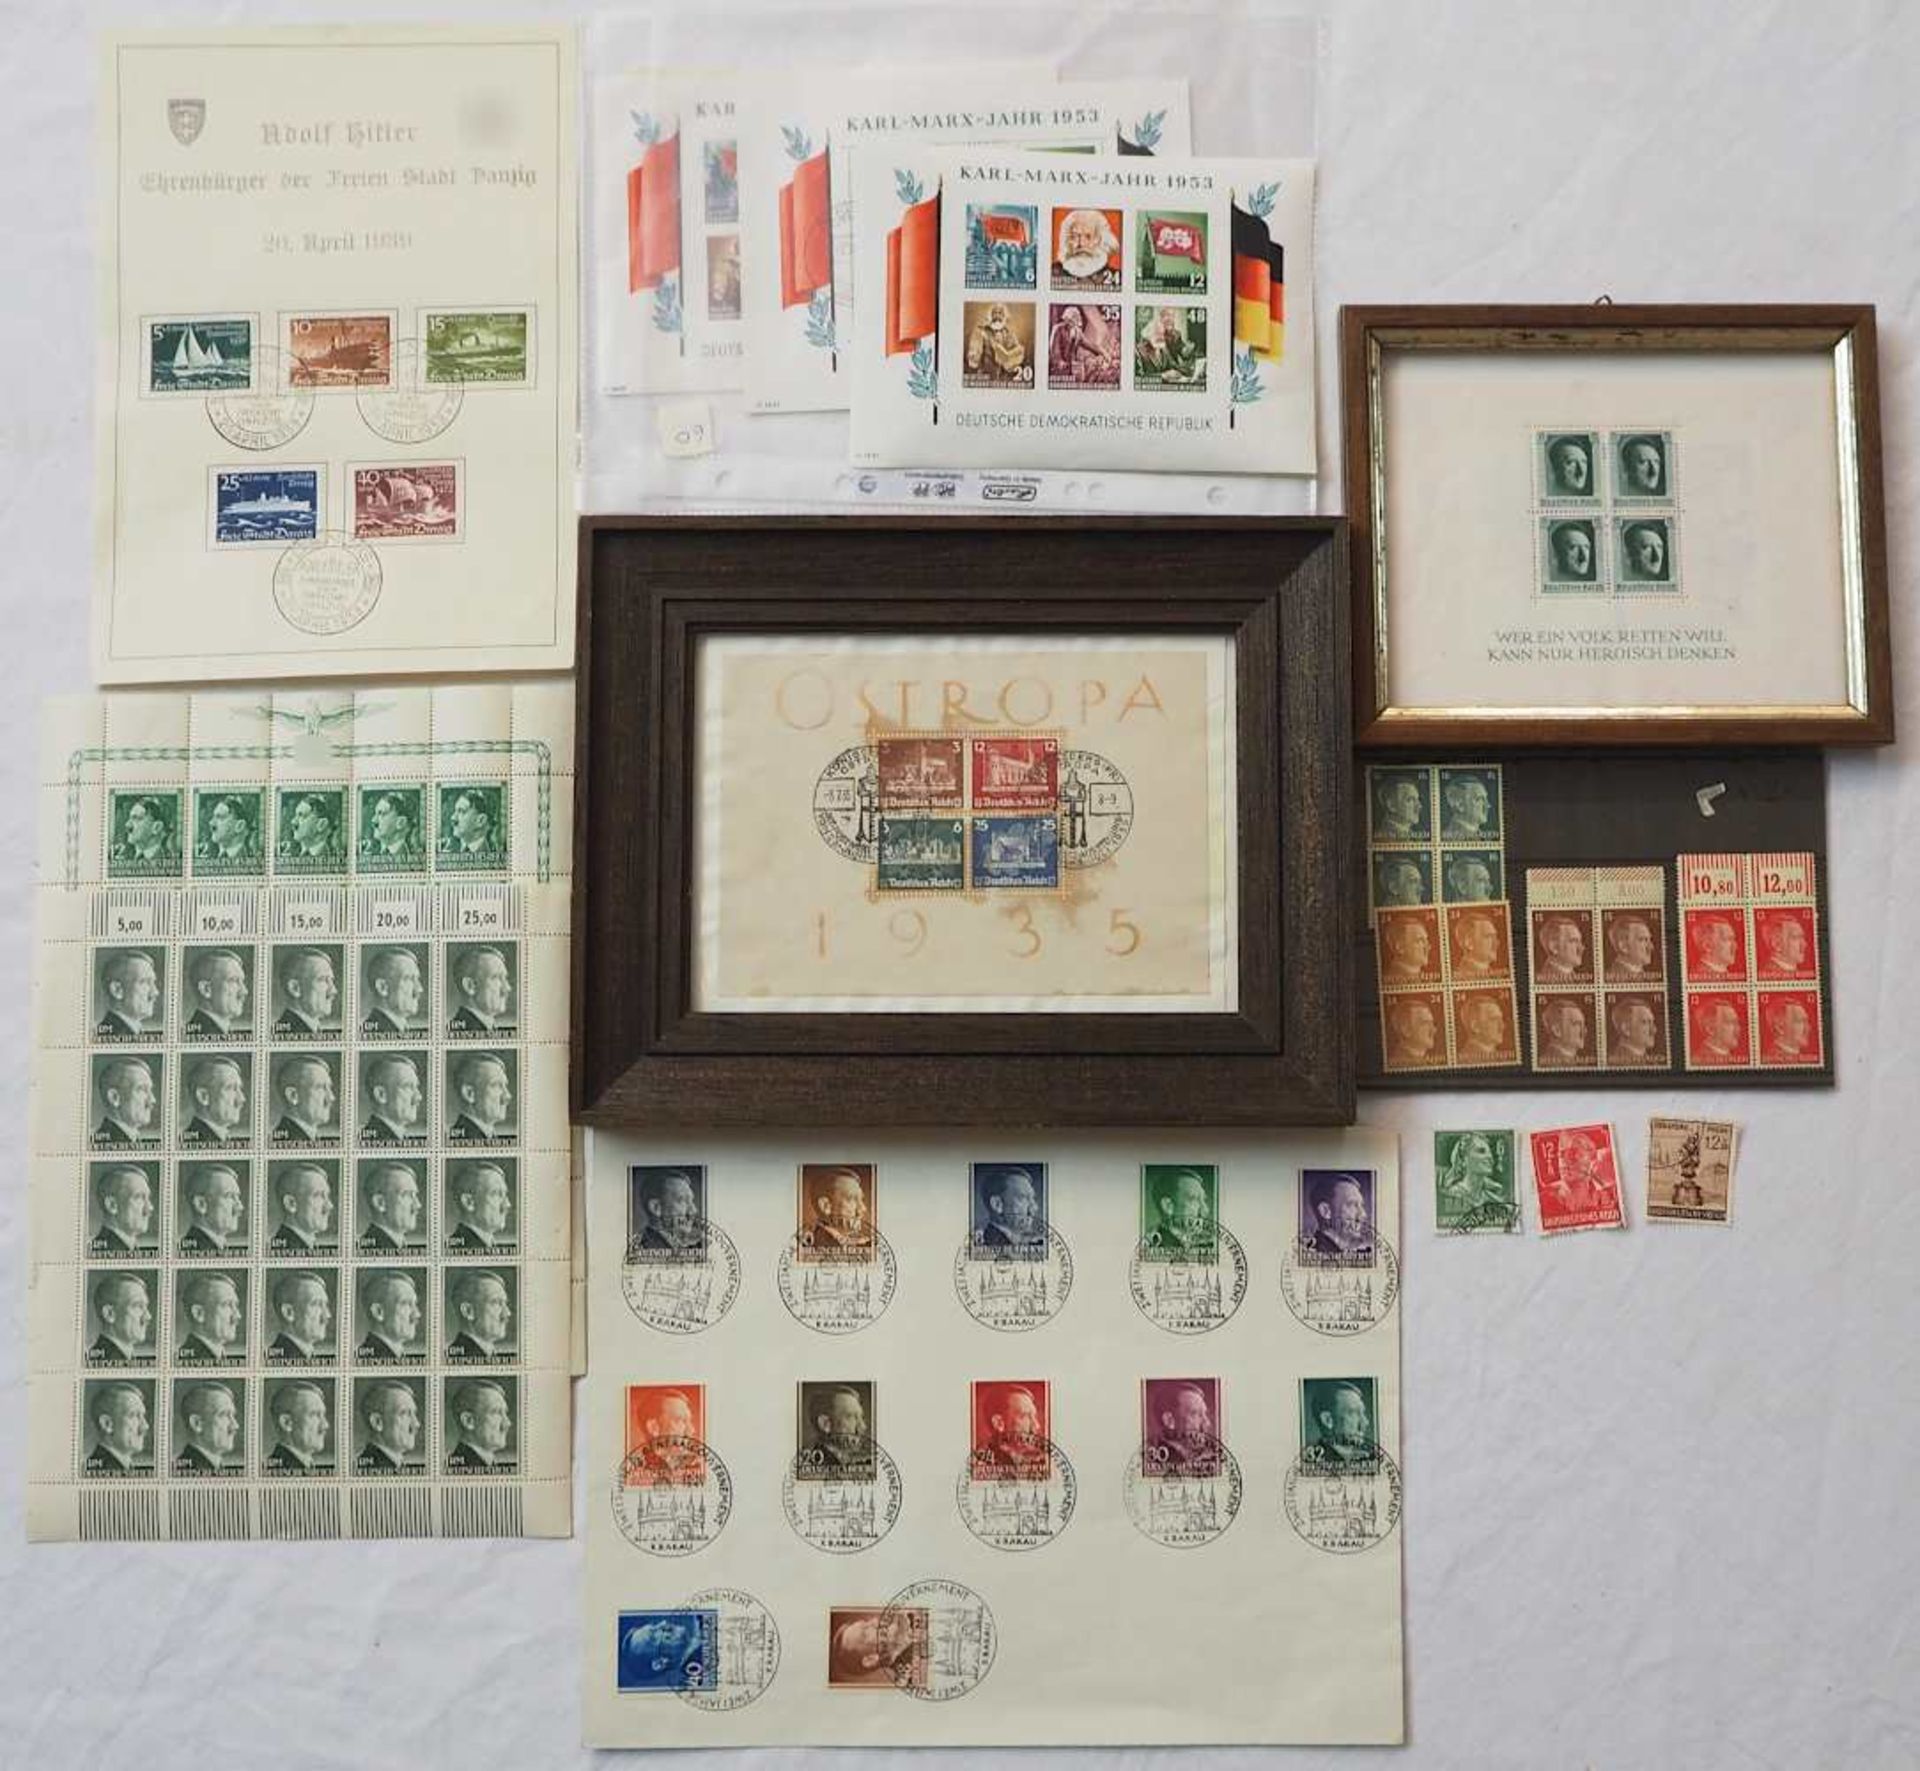 1 Konv. Briefmarken 3. Reich auf mehreren Blättern sowie Blöcke "Großdeutsches Reic